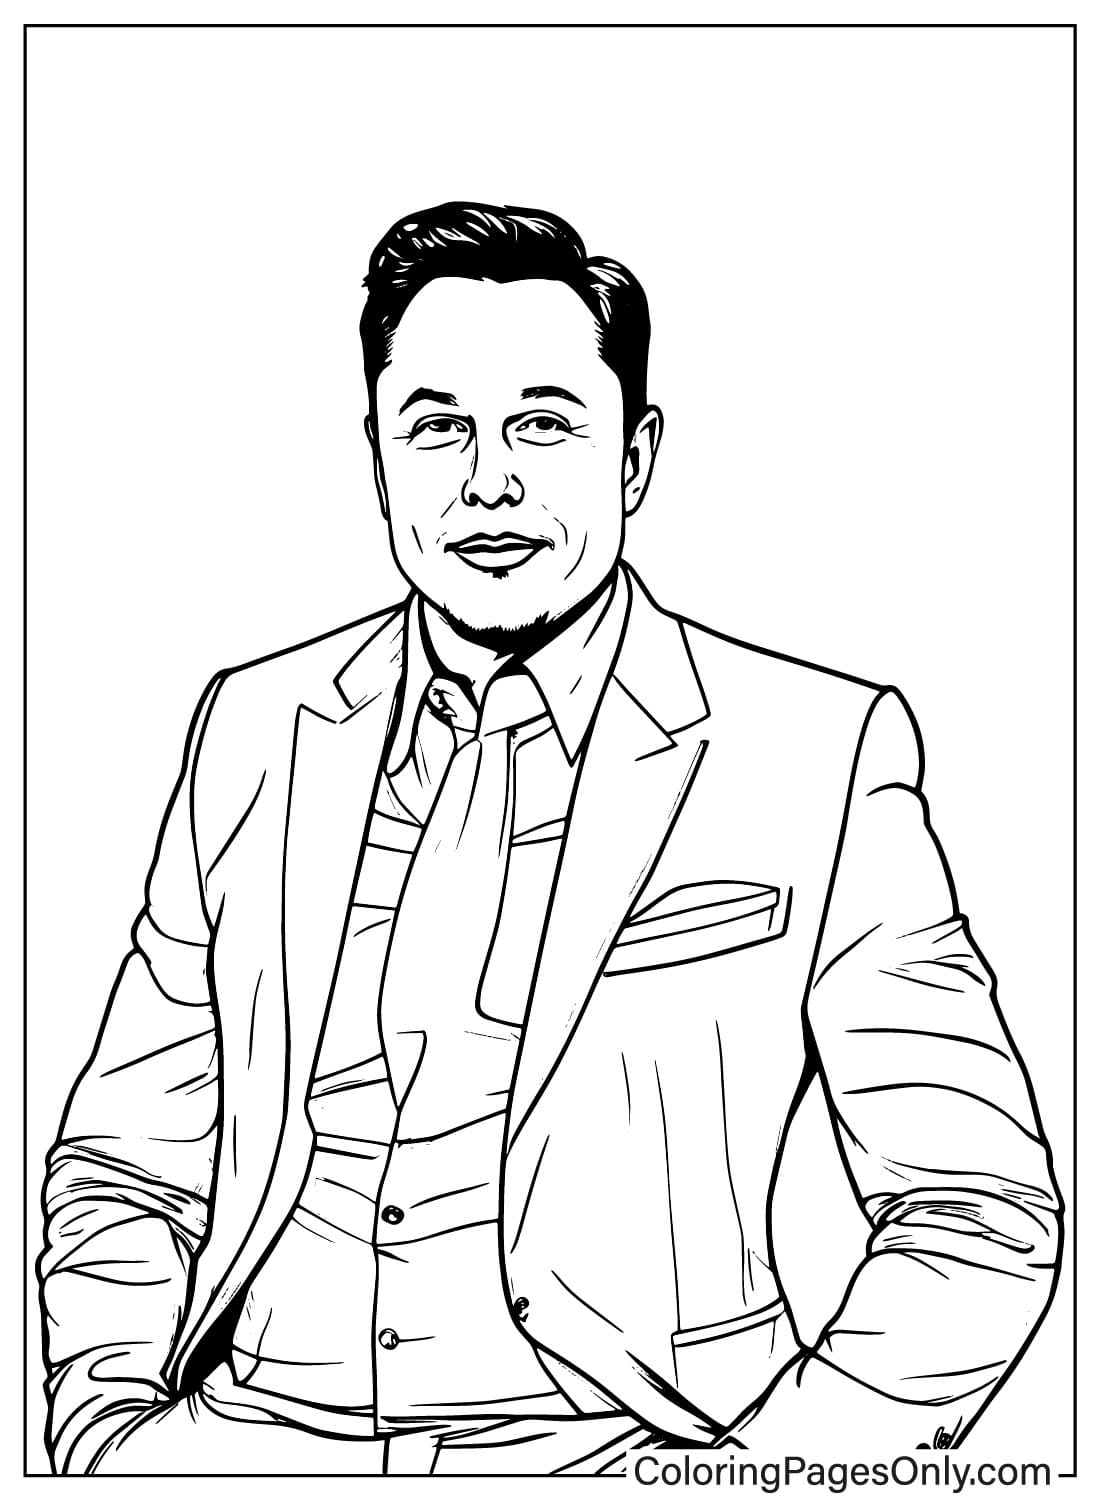 Página para colorir de imagens de Elon Musk